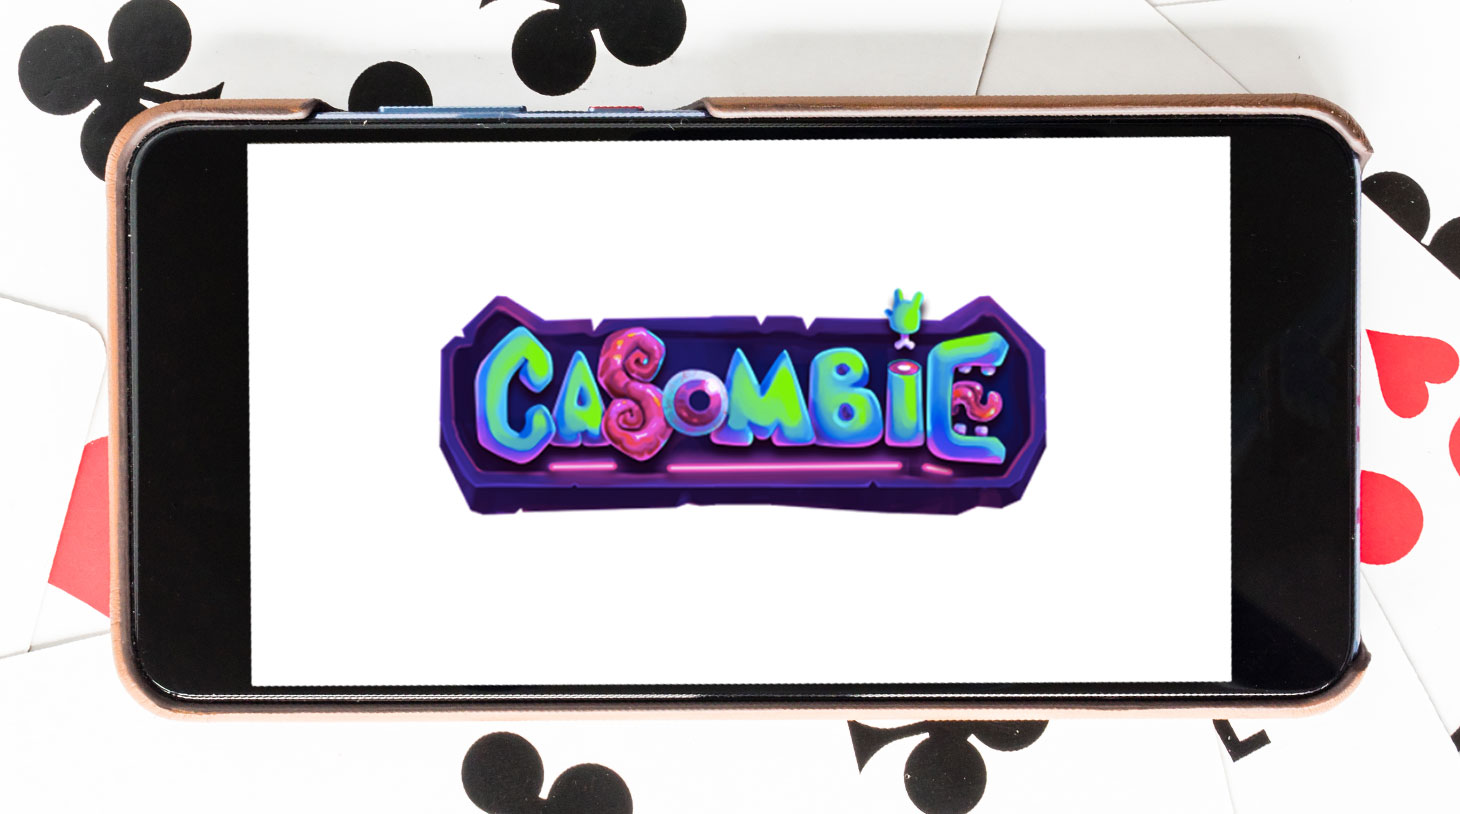 casombie-casino-featured-pic